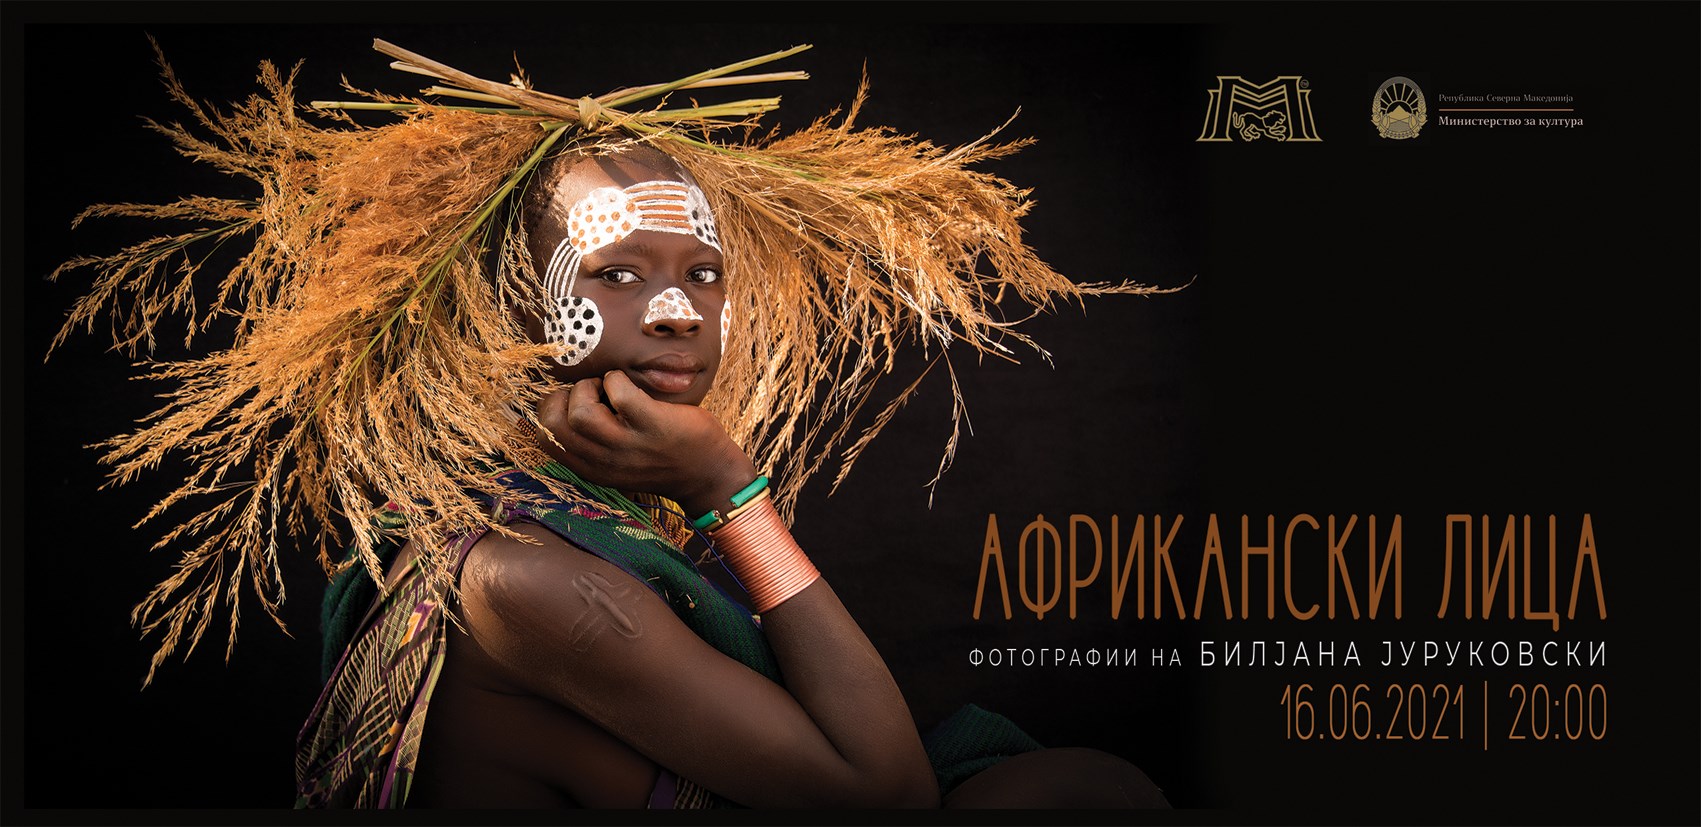 Изложба на фотографии “Африкански лица” од Билјана Јуруковски